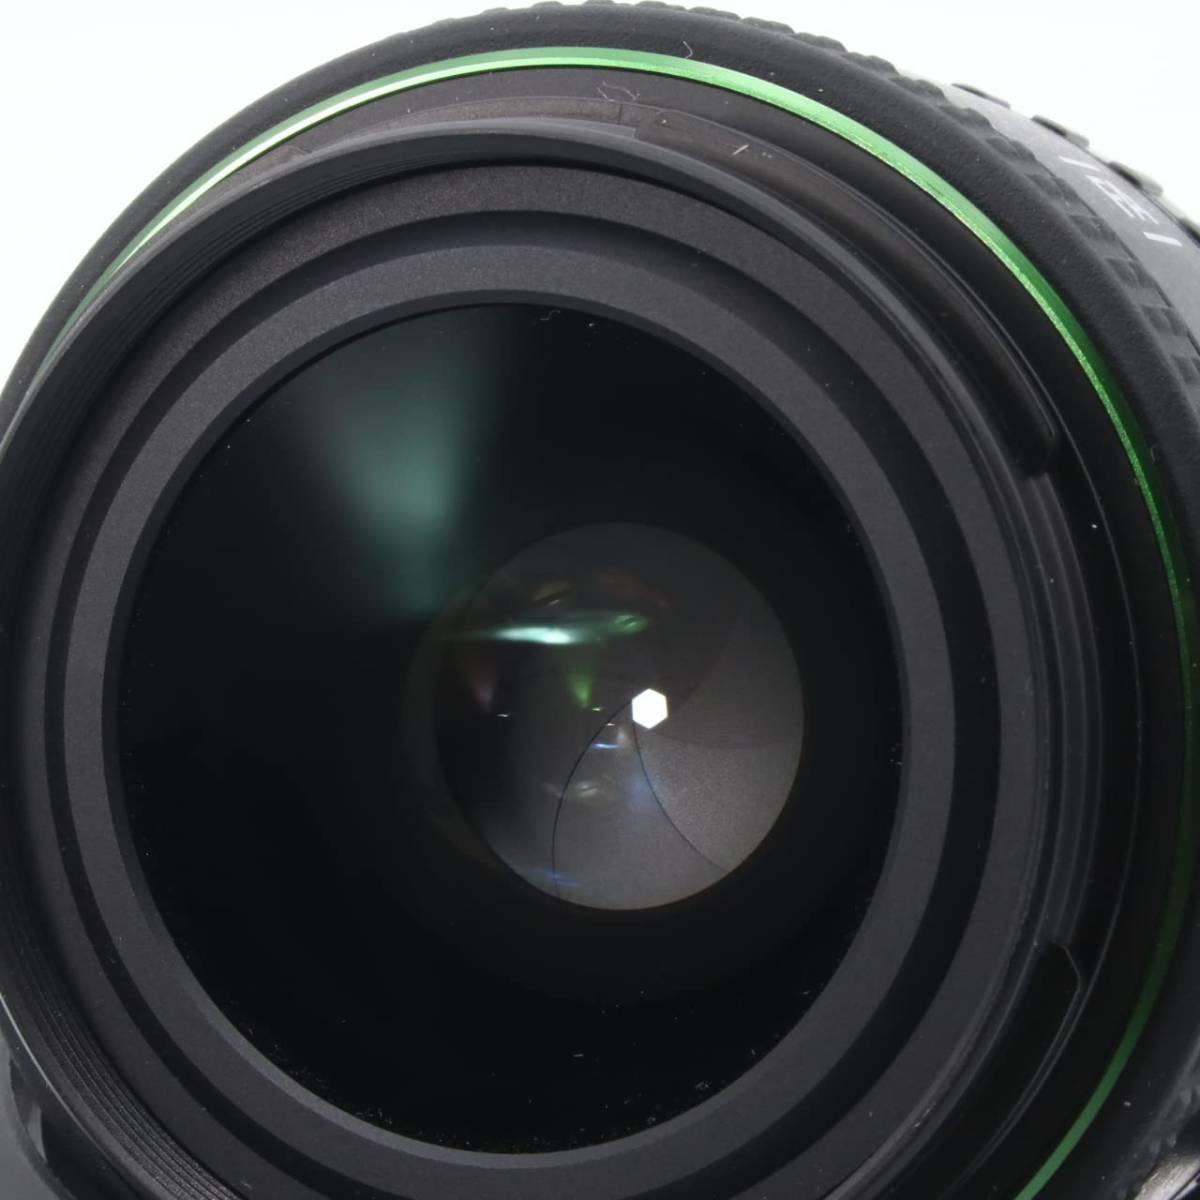 激安商品 HD PENTAX-FA35mmF2 広角単焦点レンズ フルサイズ対応良好な描写性能高性能 HDコーティング小型 軽量設計近接撮影 30cm 